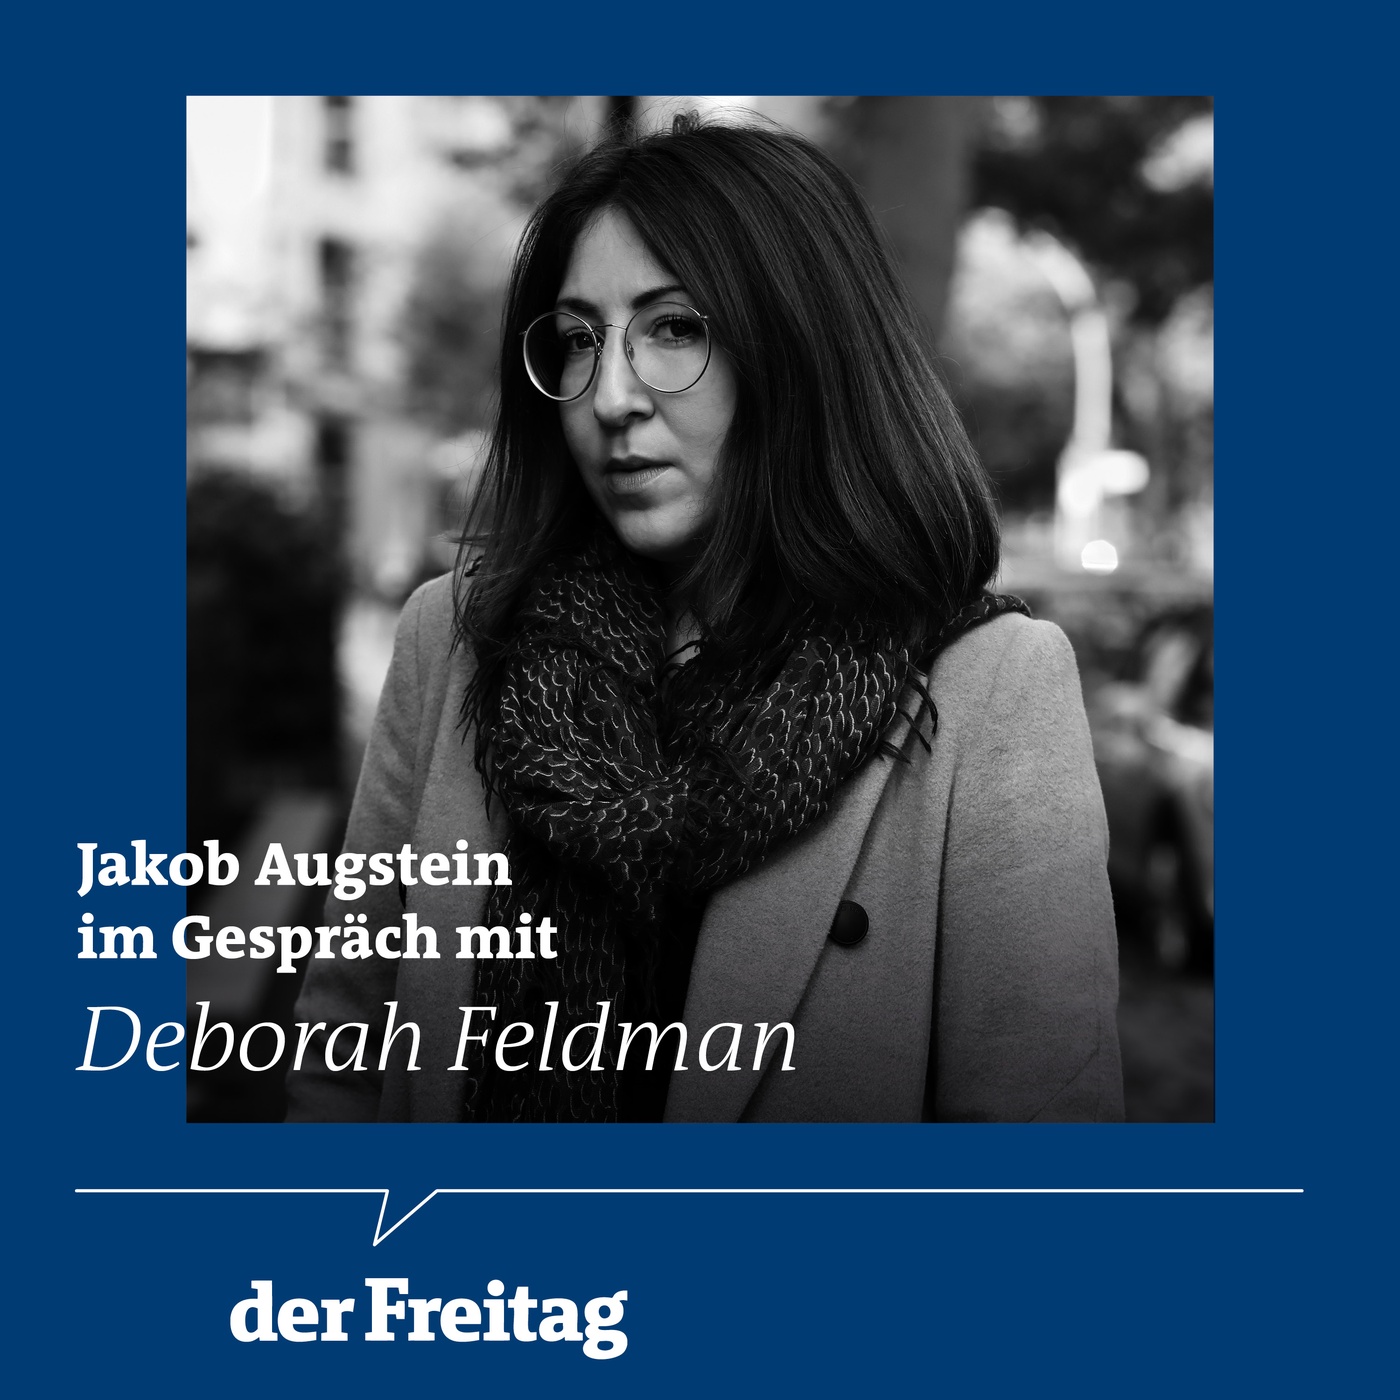 Deborah Feldman im Gespräch mit Jakob Augstein: „Jüdische Vielfalt ist kein Kuschelbegriff“